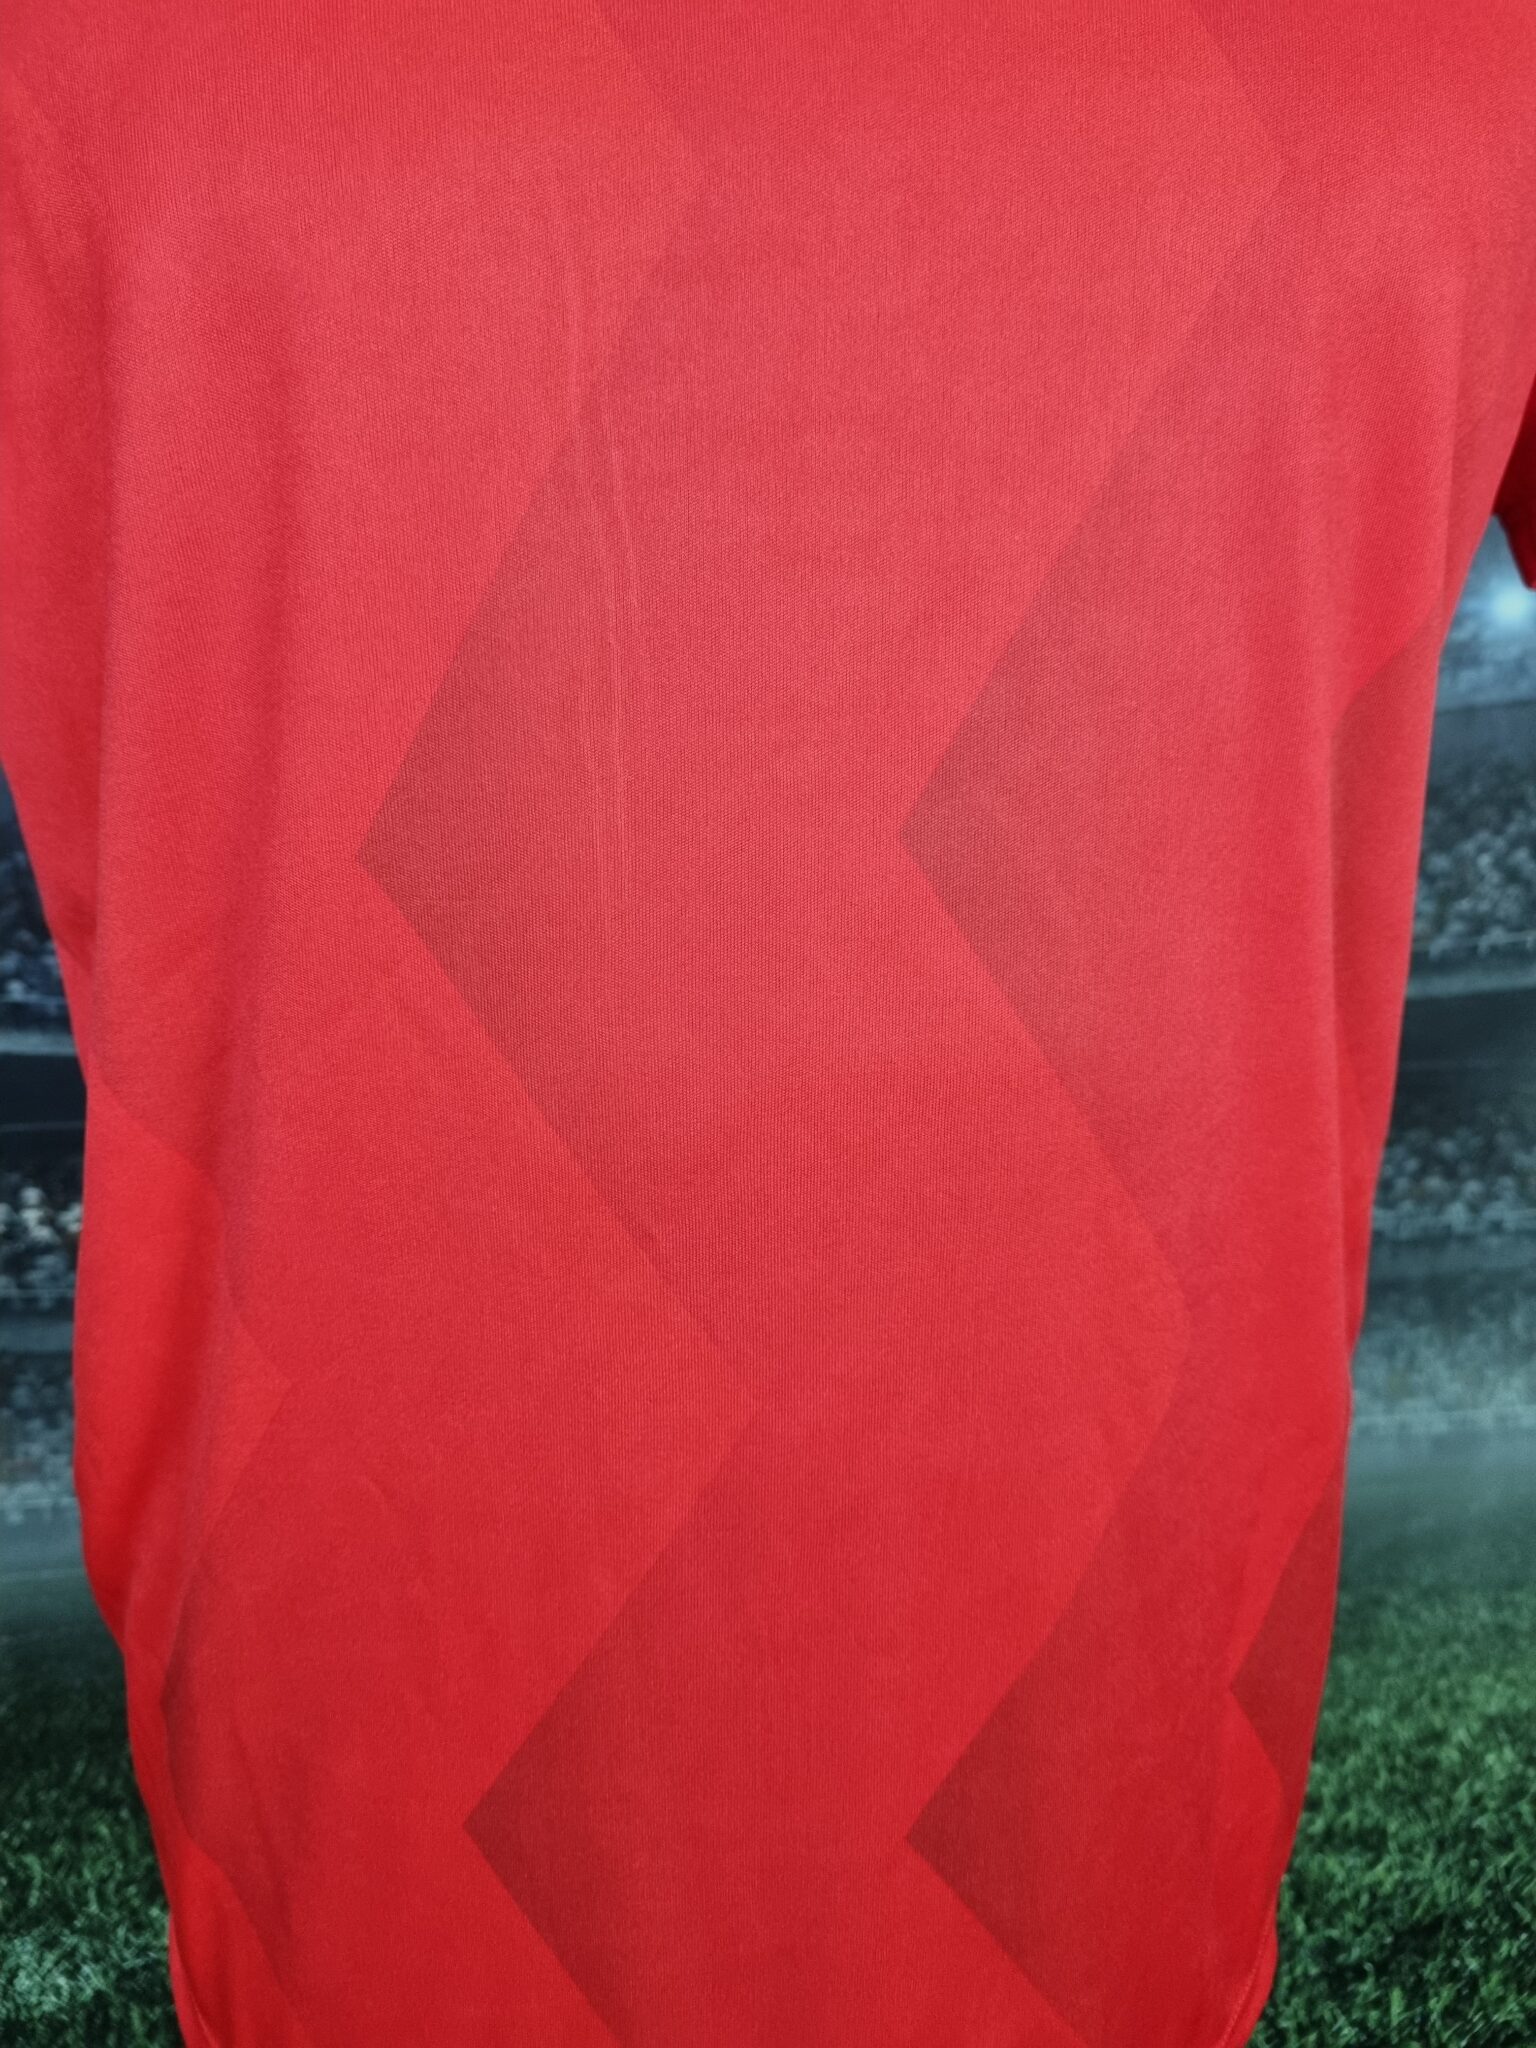 Portugal National Team Home Football Shirt Camiseta Retro 1986 Retro World Cup - Sport Club Memories